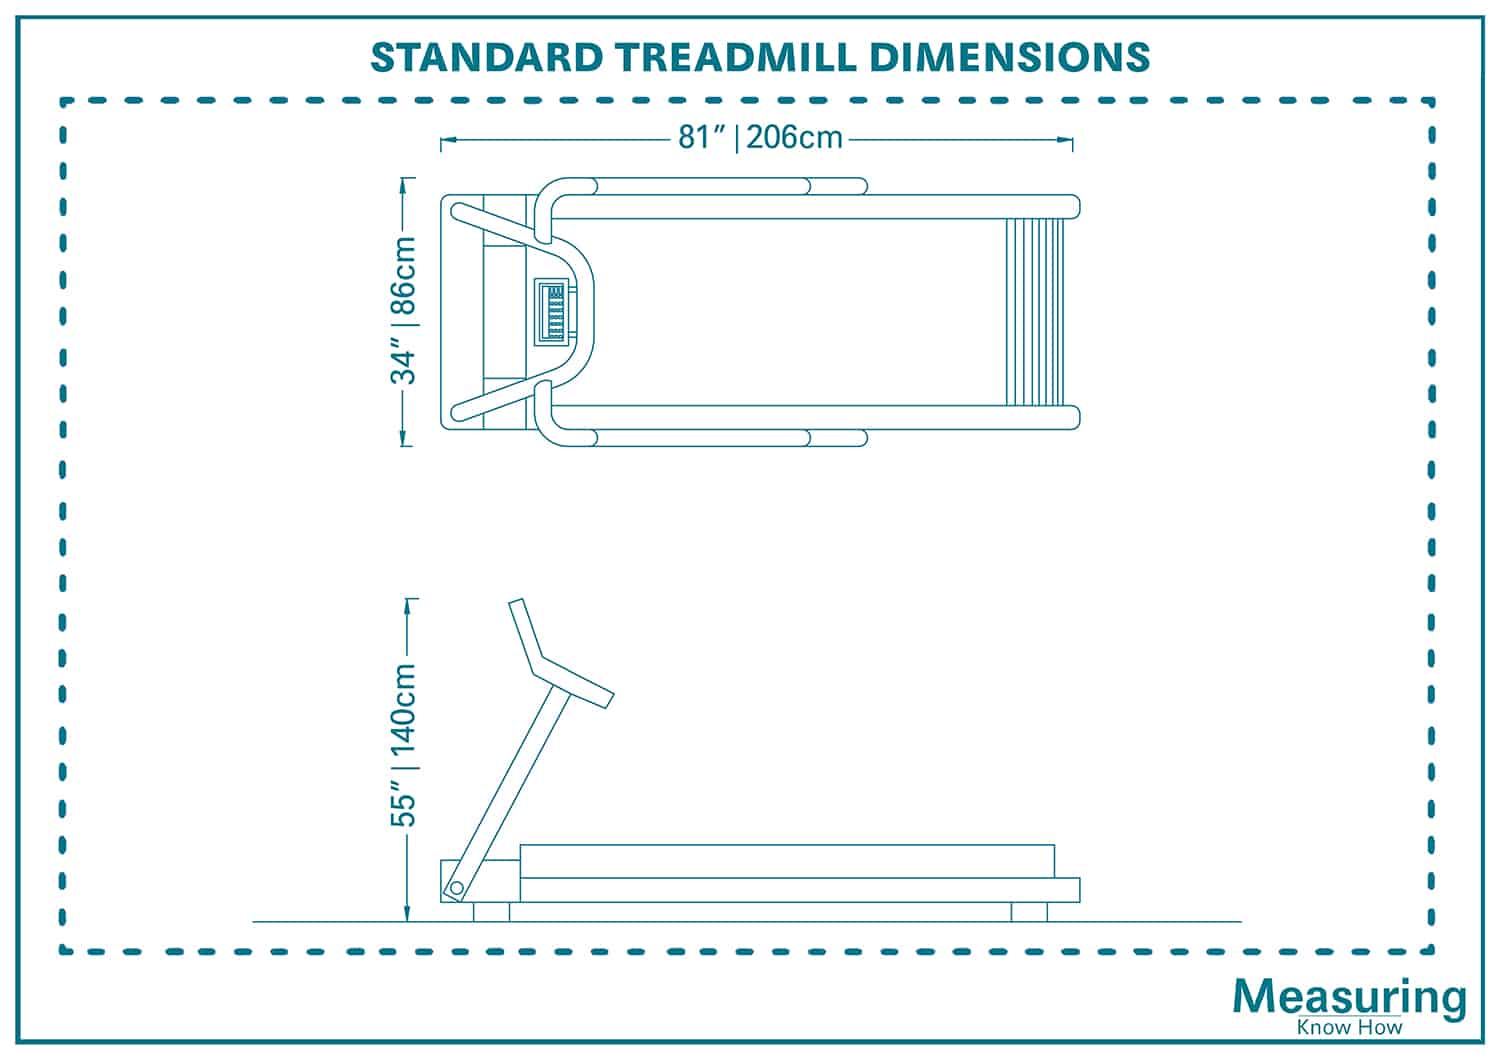 Standard Treadmill Dimensions